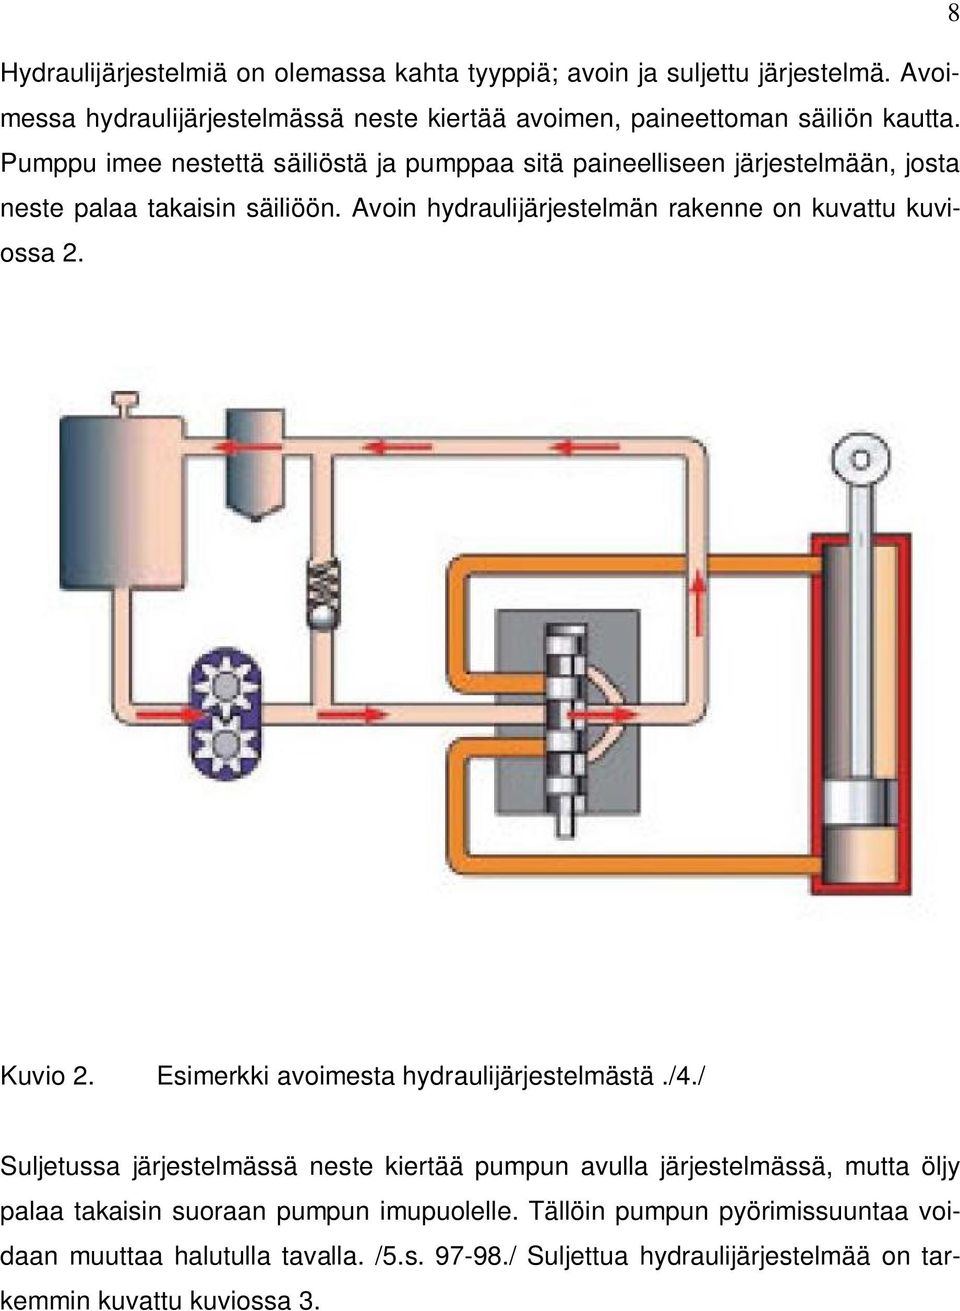 Avoin hydraulijärjestelmän rakenne on kuvattu kuviossa 2. Kuvio 2. Esimerkki avoimesta hydraulijärjestelmästä./4.